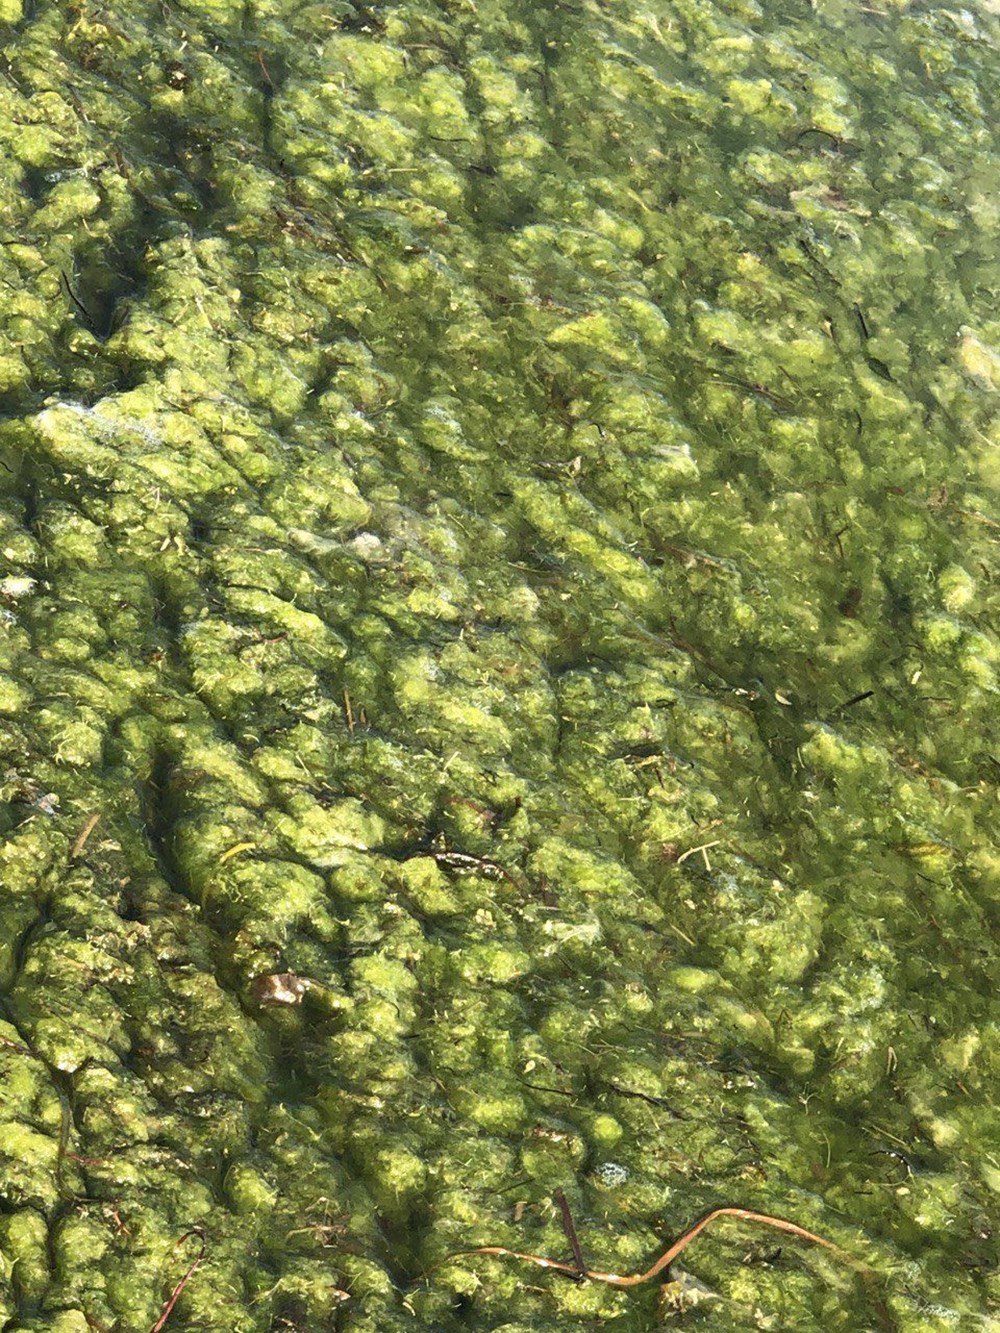 Beyşehir Gölü'nde alg patlaması: Suyun rengi yeşile döndü - 4